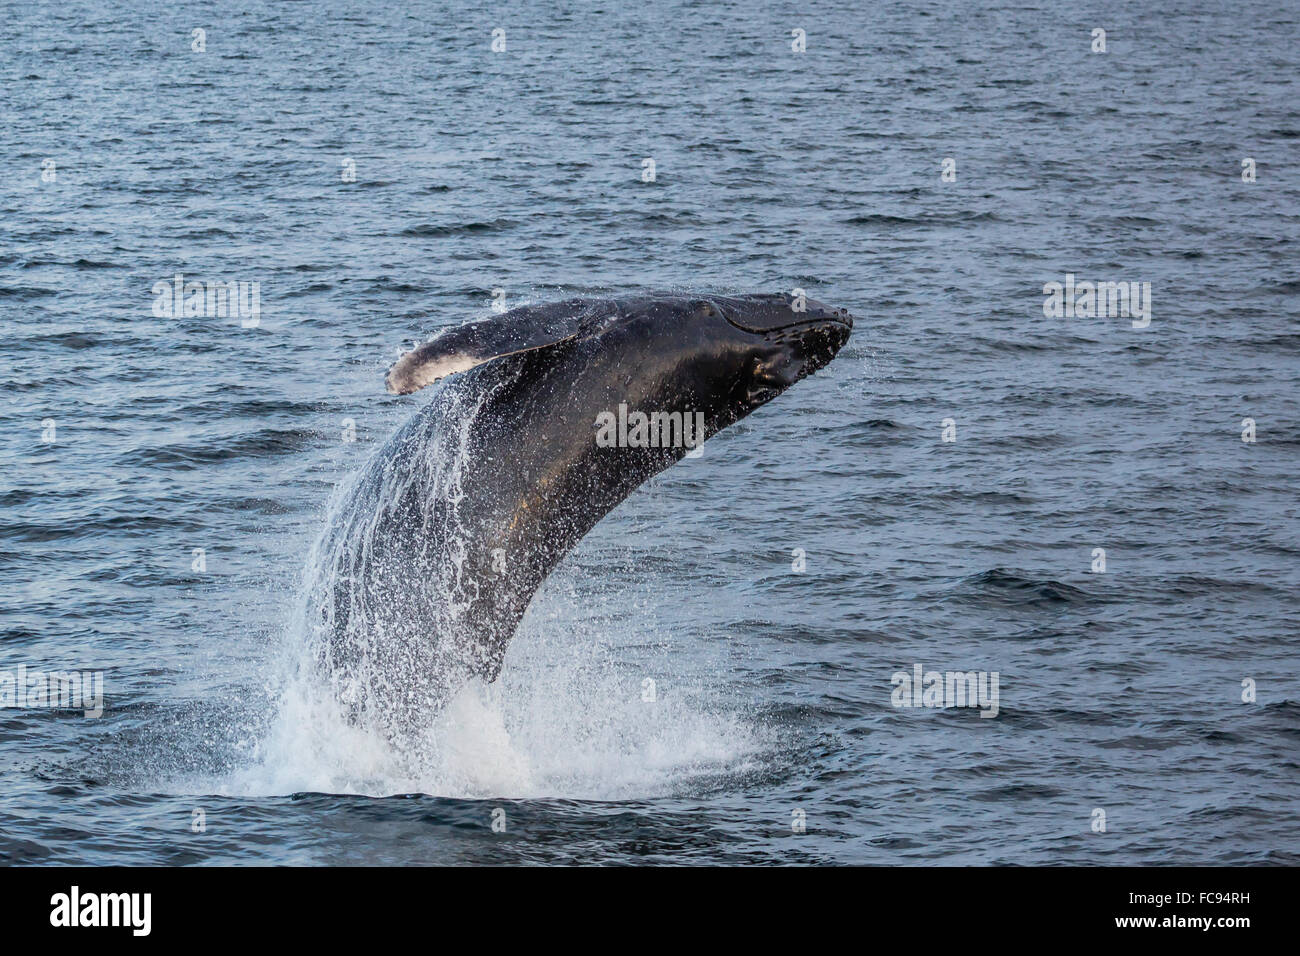 Humpback whale (Megaptera novaeangliae) breaching off Gwaii Haanas, Haida Gwaii, British Columbia, Canada, North America Stock Photo